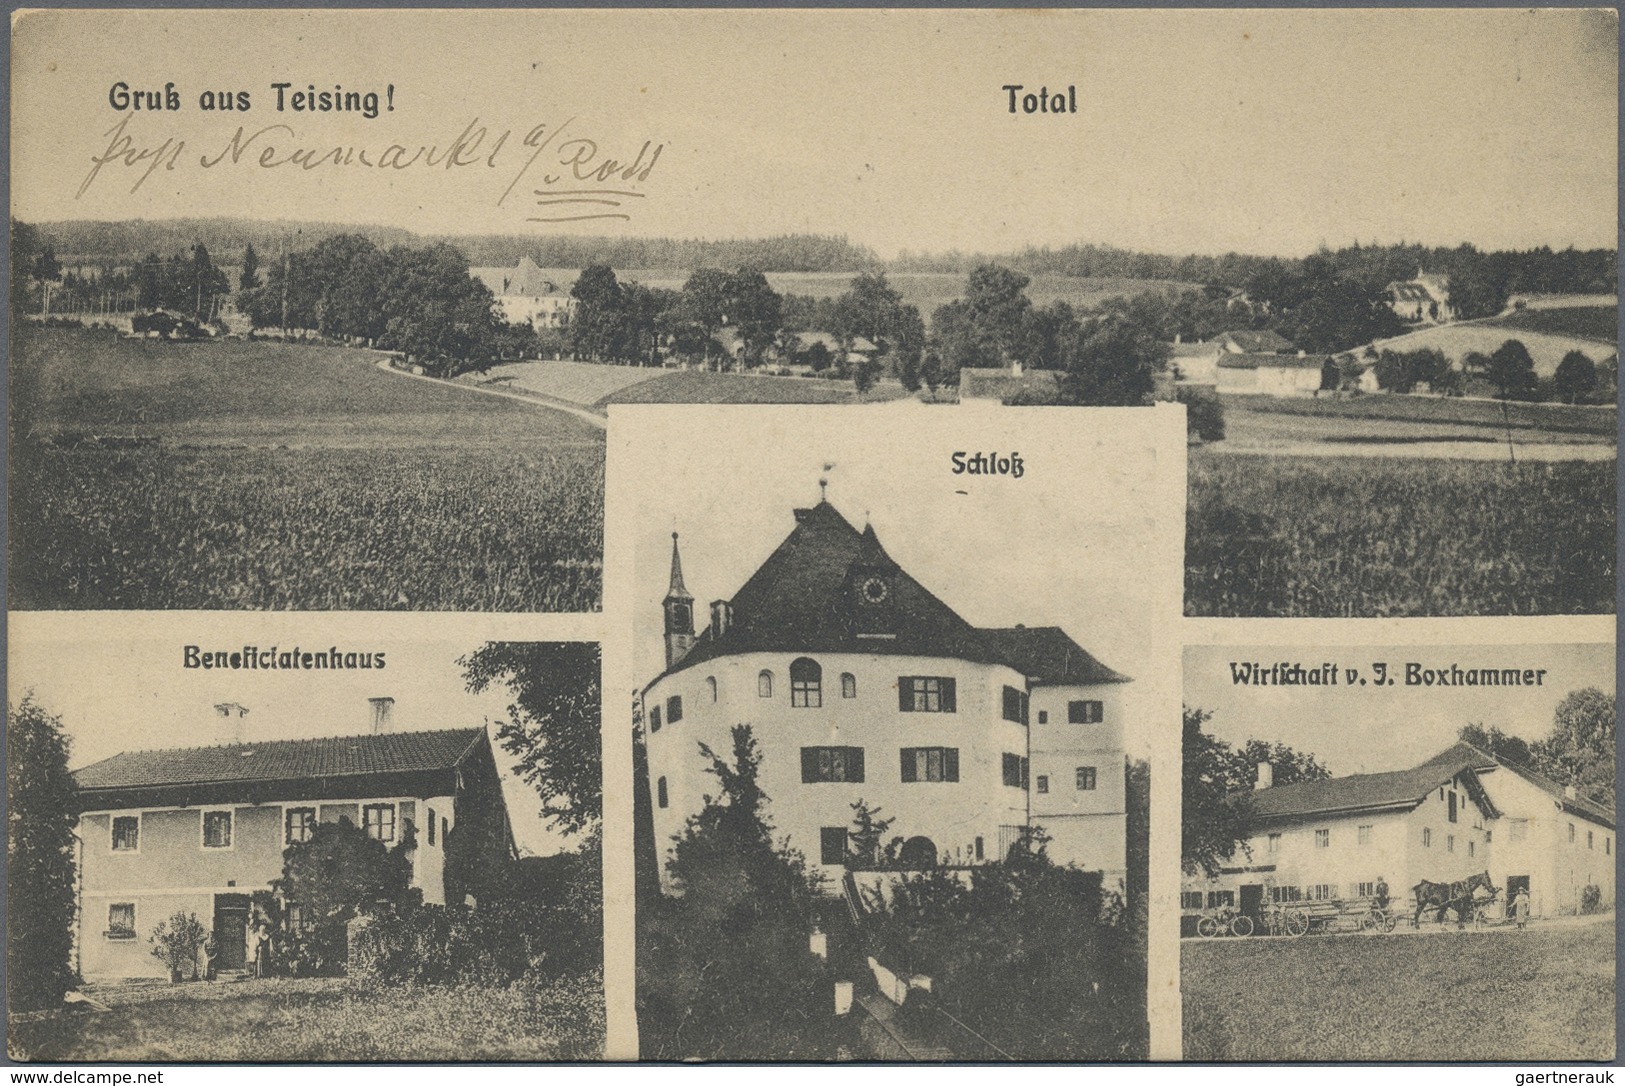 Ansichtskarten: Deutschland: 1898/1930 (ca.), Partie von ca. 170 Ansichtskarten mit vielerlei Motive